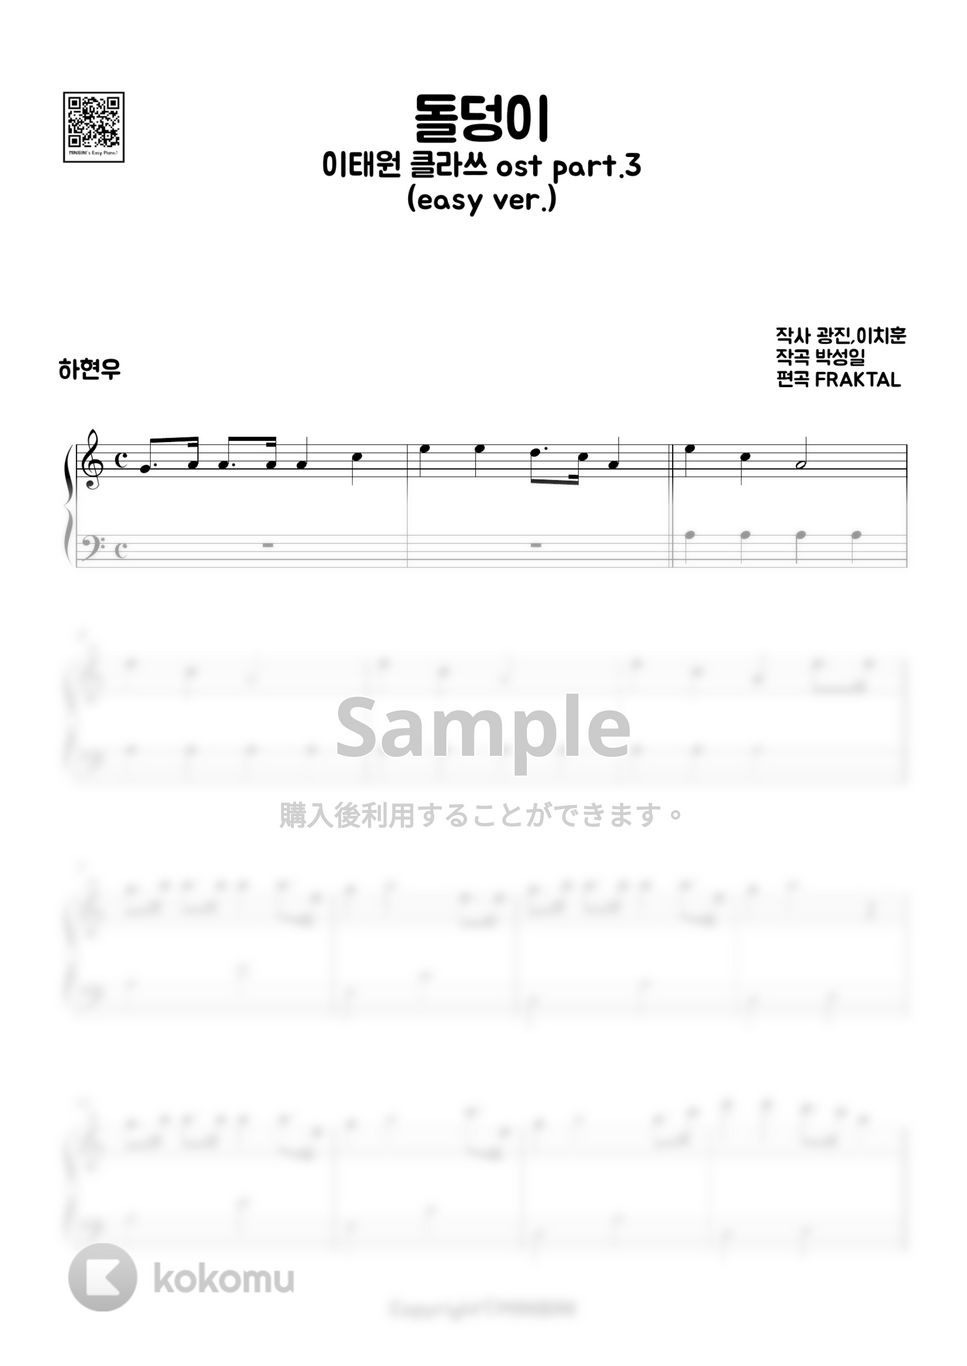 ハ・ヒョヌ(梨泰院クラス OST) - 石ころ (Easy ver.) by MINIBINI